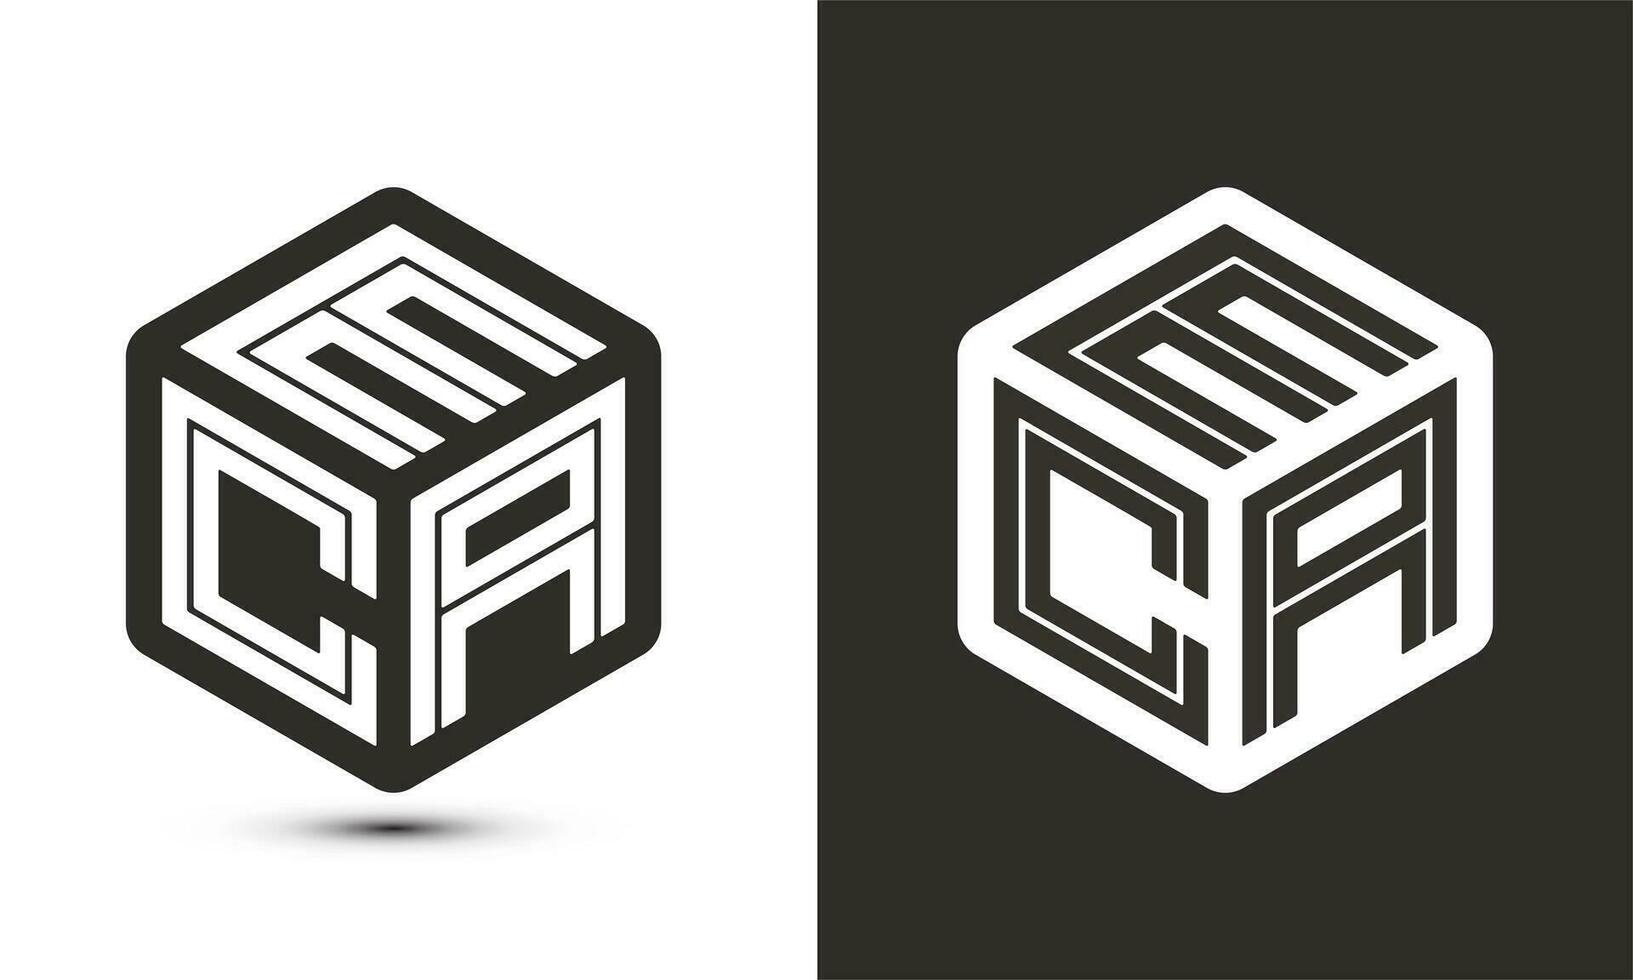 eca brev logotyp design med illustratör kub logotyp, vektor logotyp modern alfabet font överlappning stil.